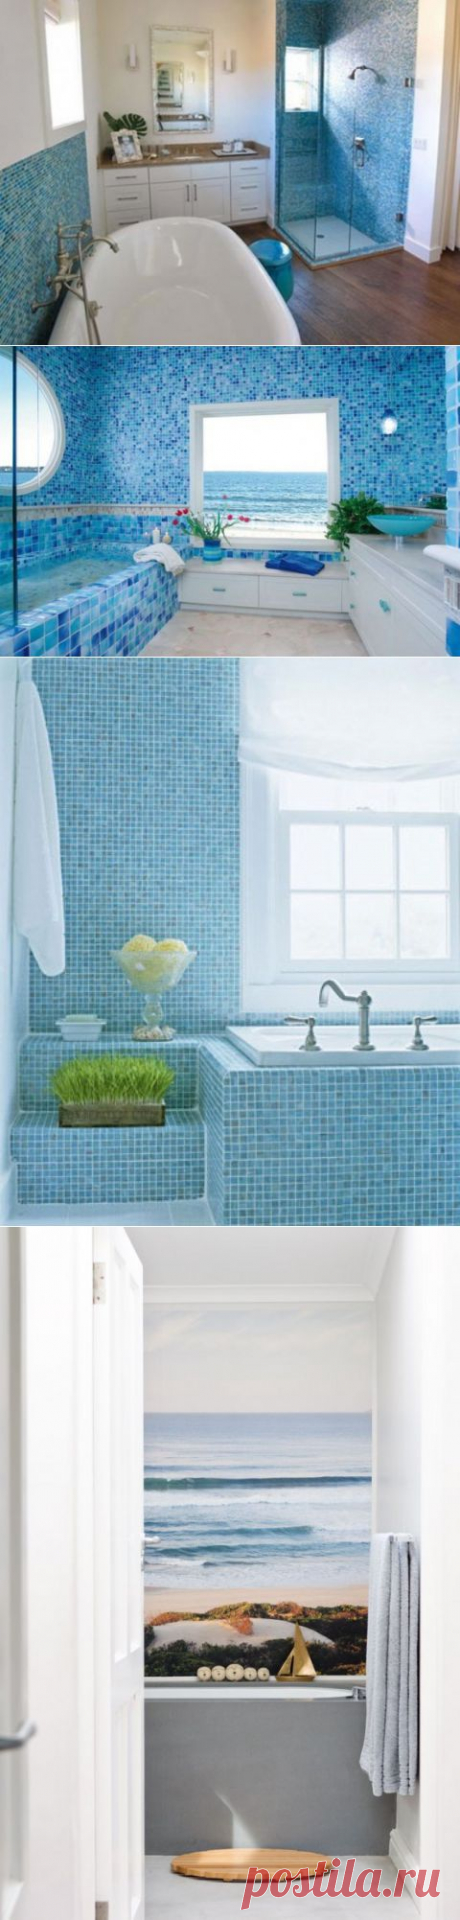 42 идеи для декора ванной комнаты в морском стиле